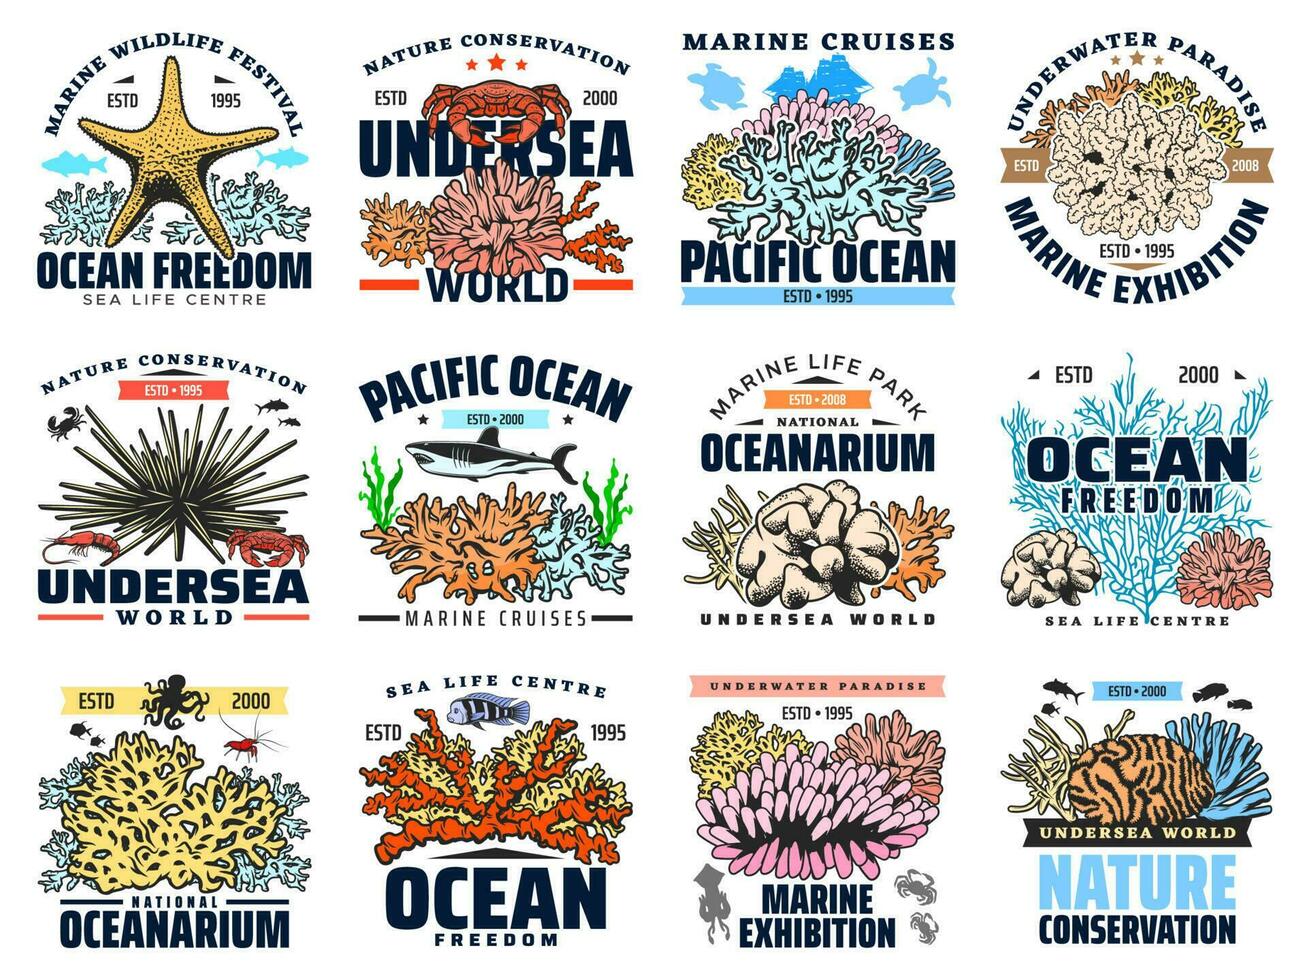 korall, skaldjur, hav fisk och djur- isolerat ikoner vektor